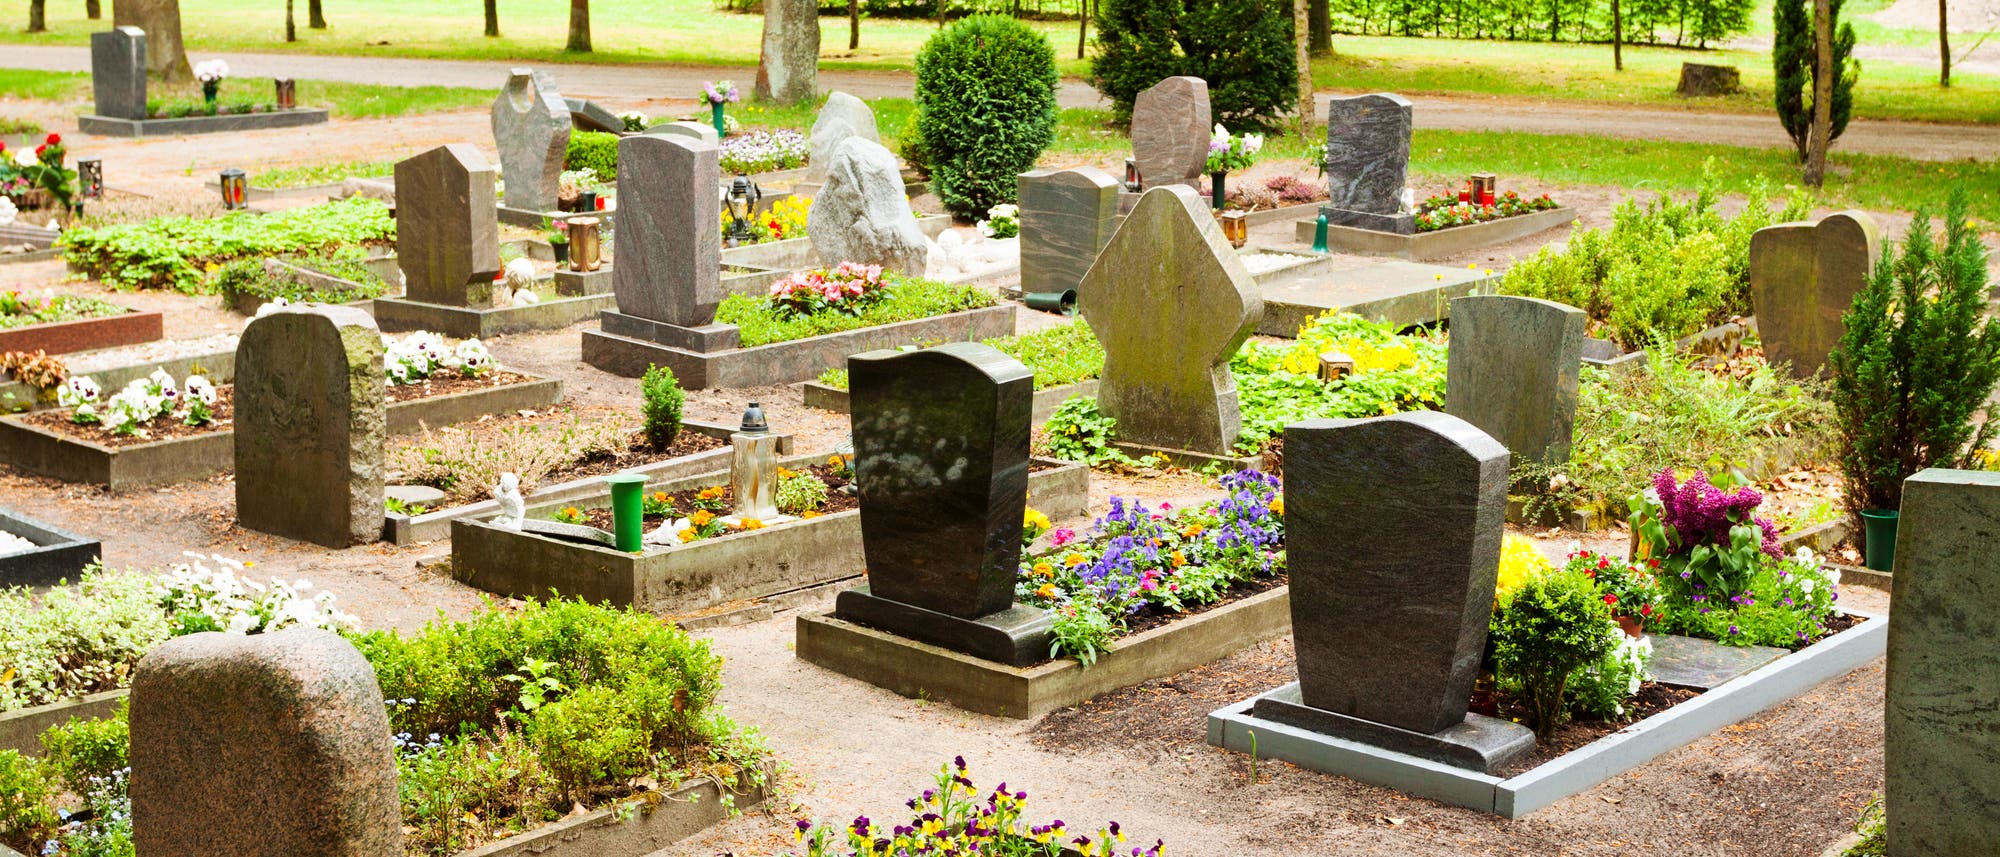 Blick auf einen Friedhof mit schlichten, modernen Grabsteinen.